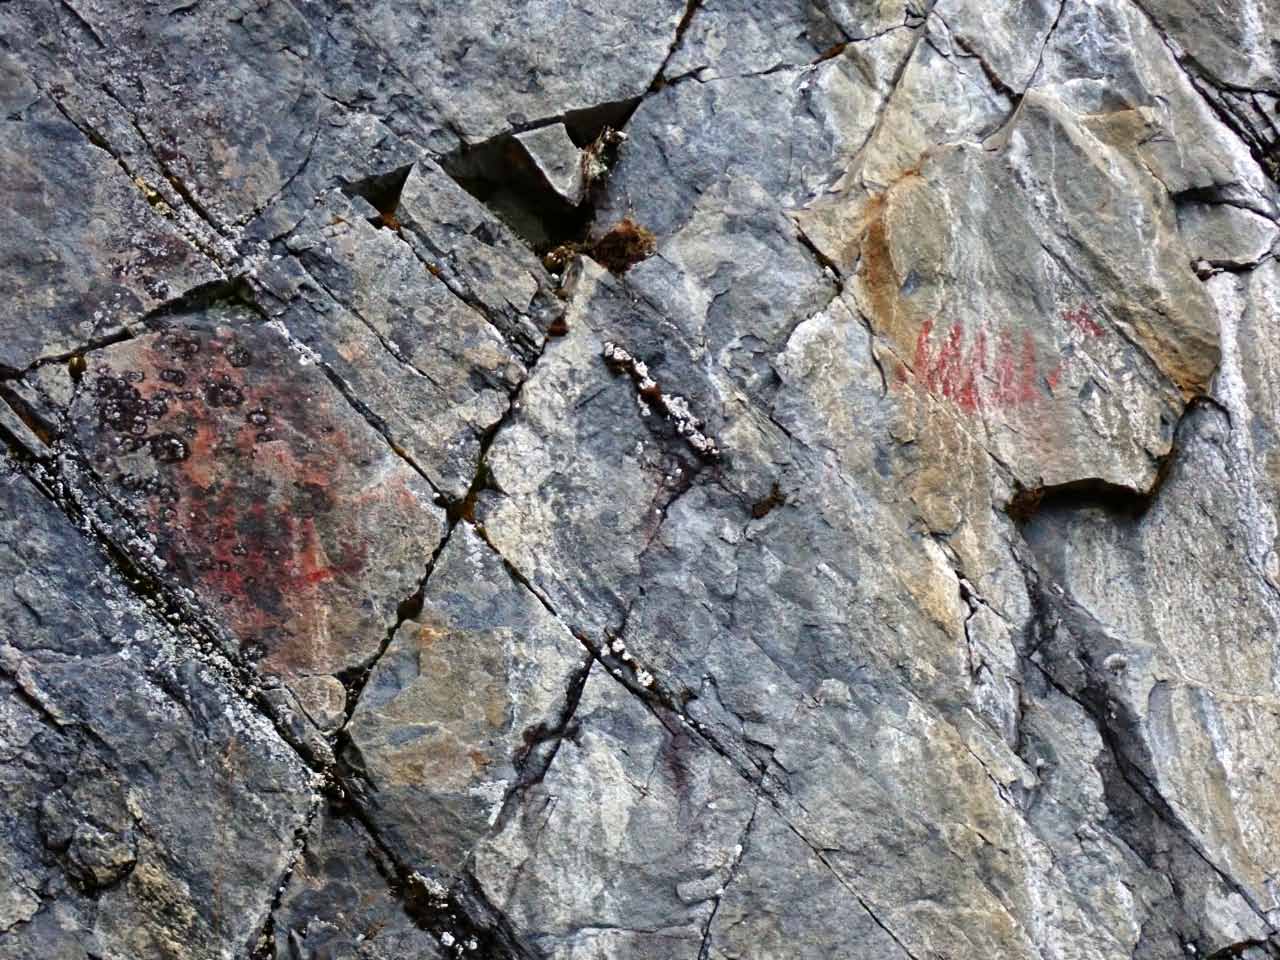 Kuva: Kalliomaalauksessa näkyy selvästi mm. kaksi ns. hirvivenekuviota. Lahden museot / Päijät-Hämeen alueellinen vastuumuseo. CC BY 4.0 Hannu Poutiainen 4.11.2020